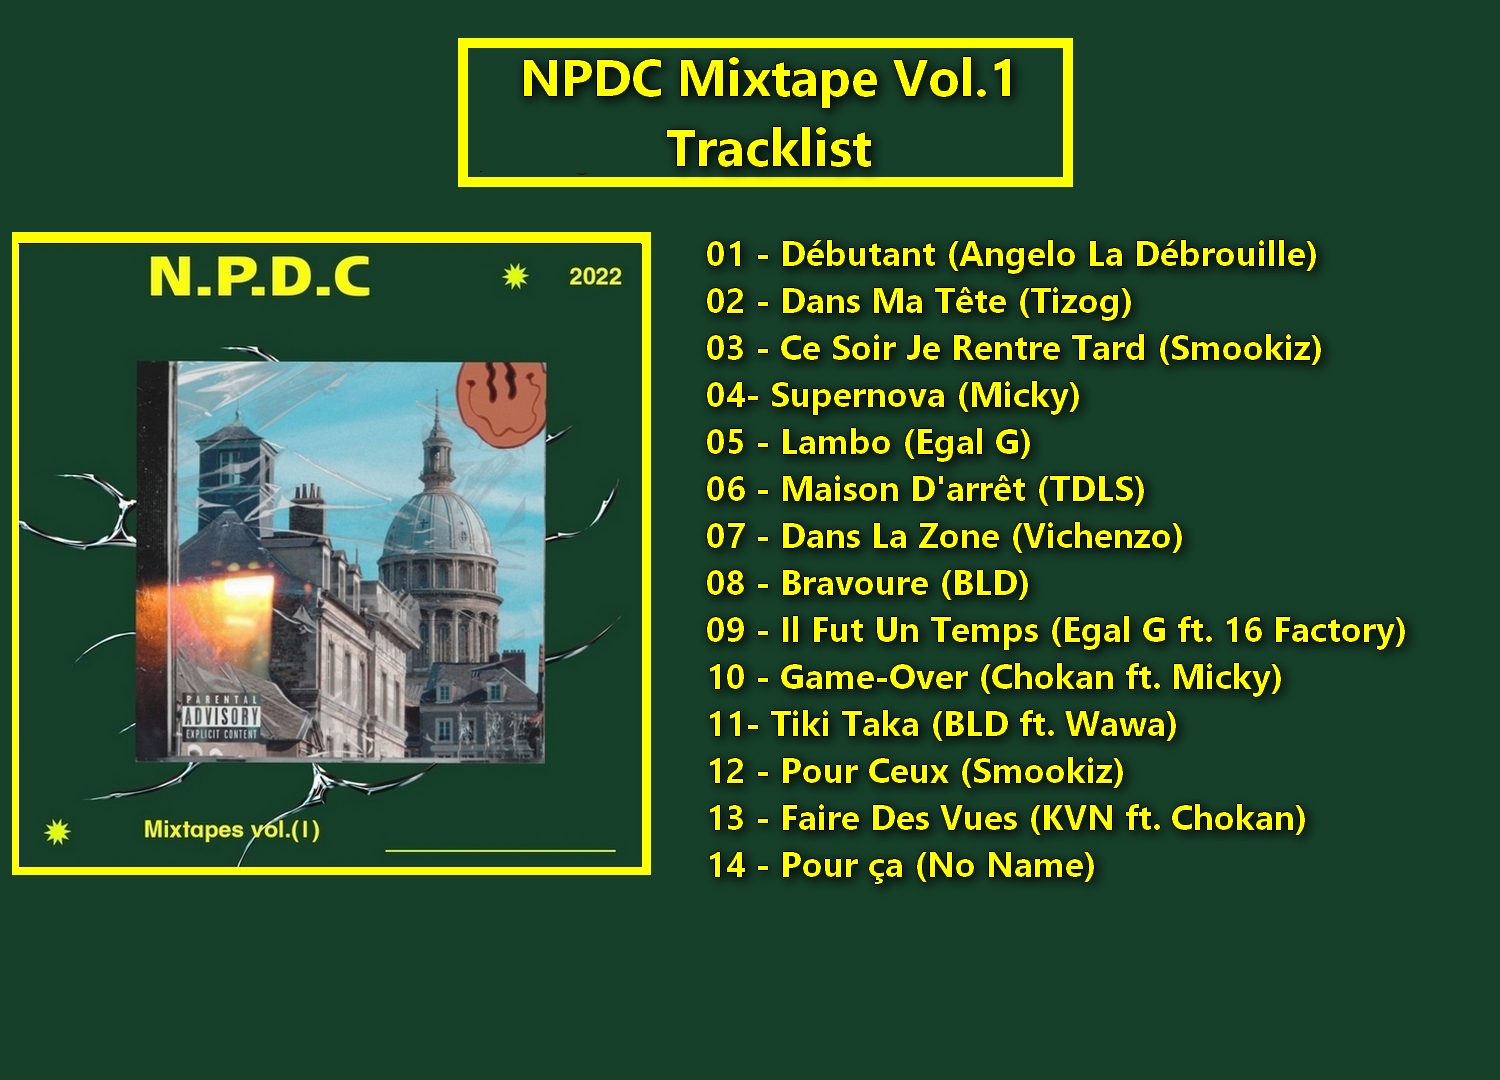 NPDC Mixtape vol 1